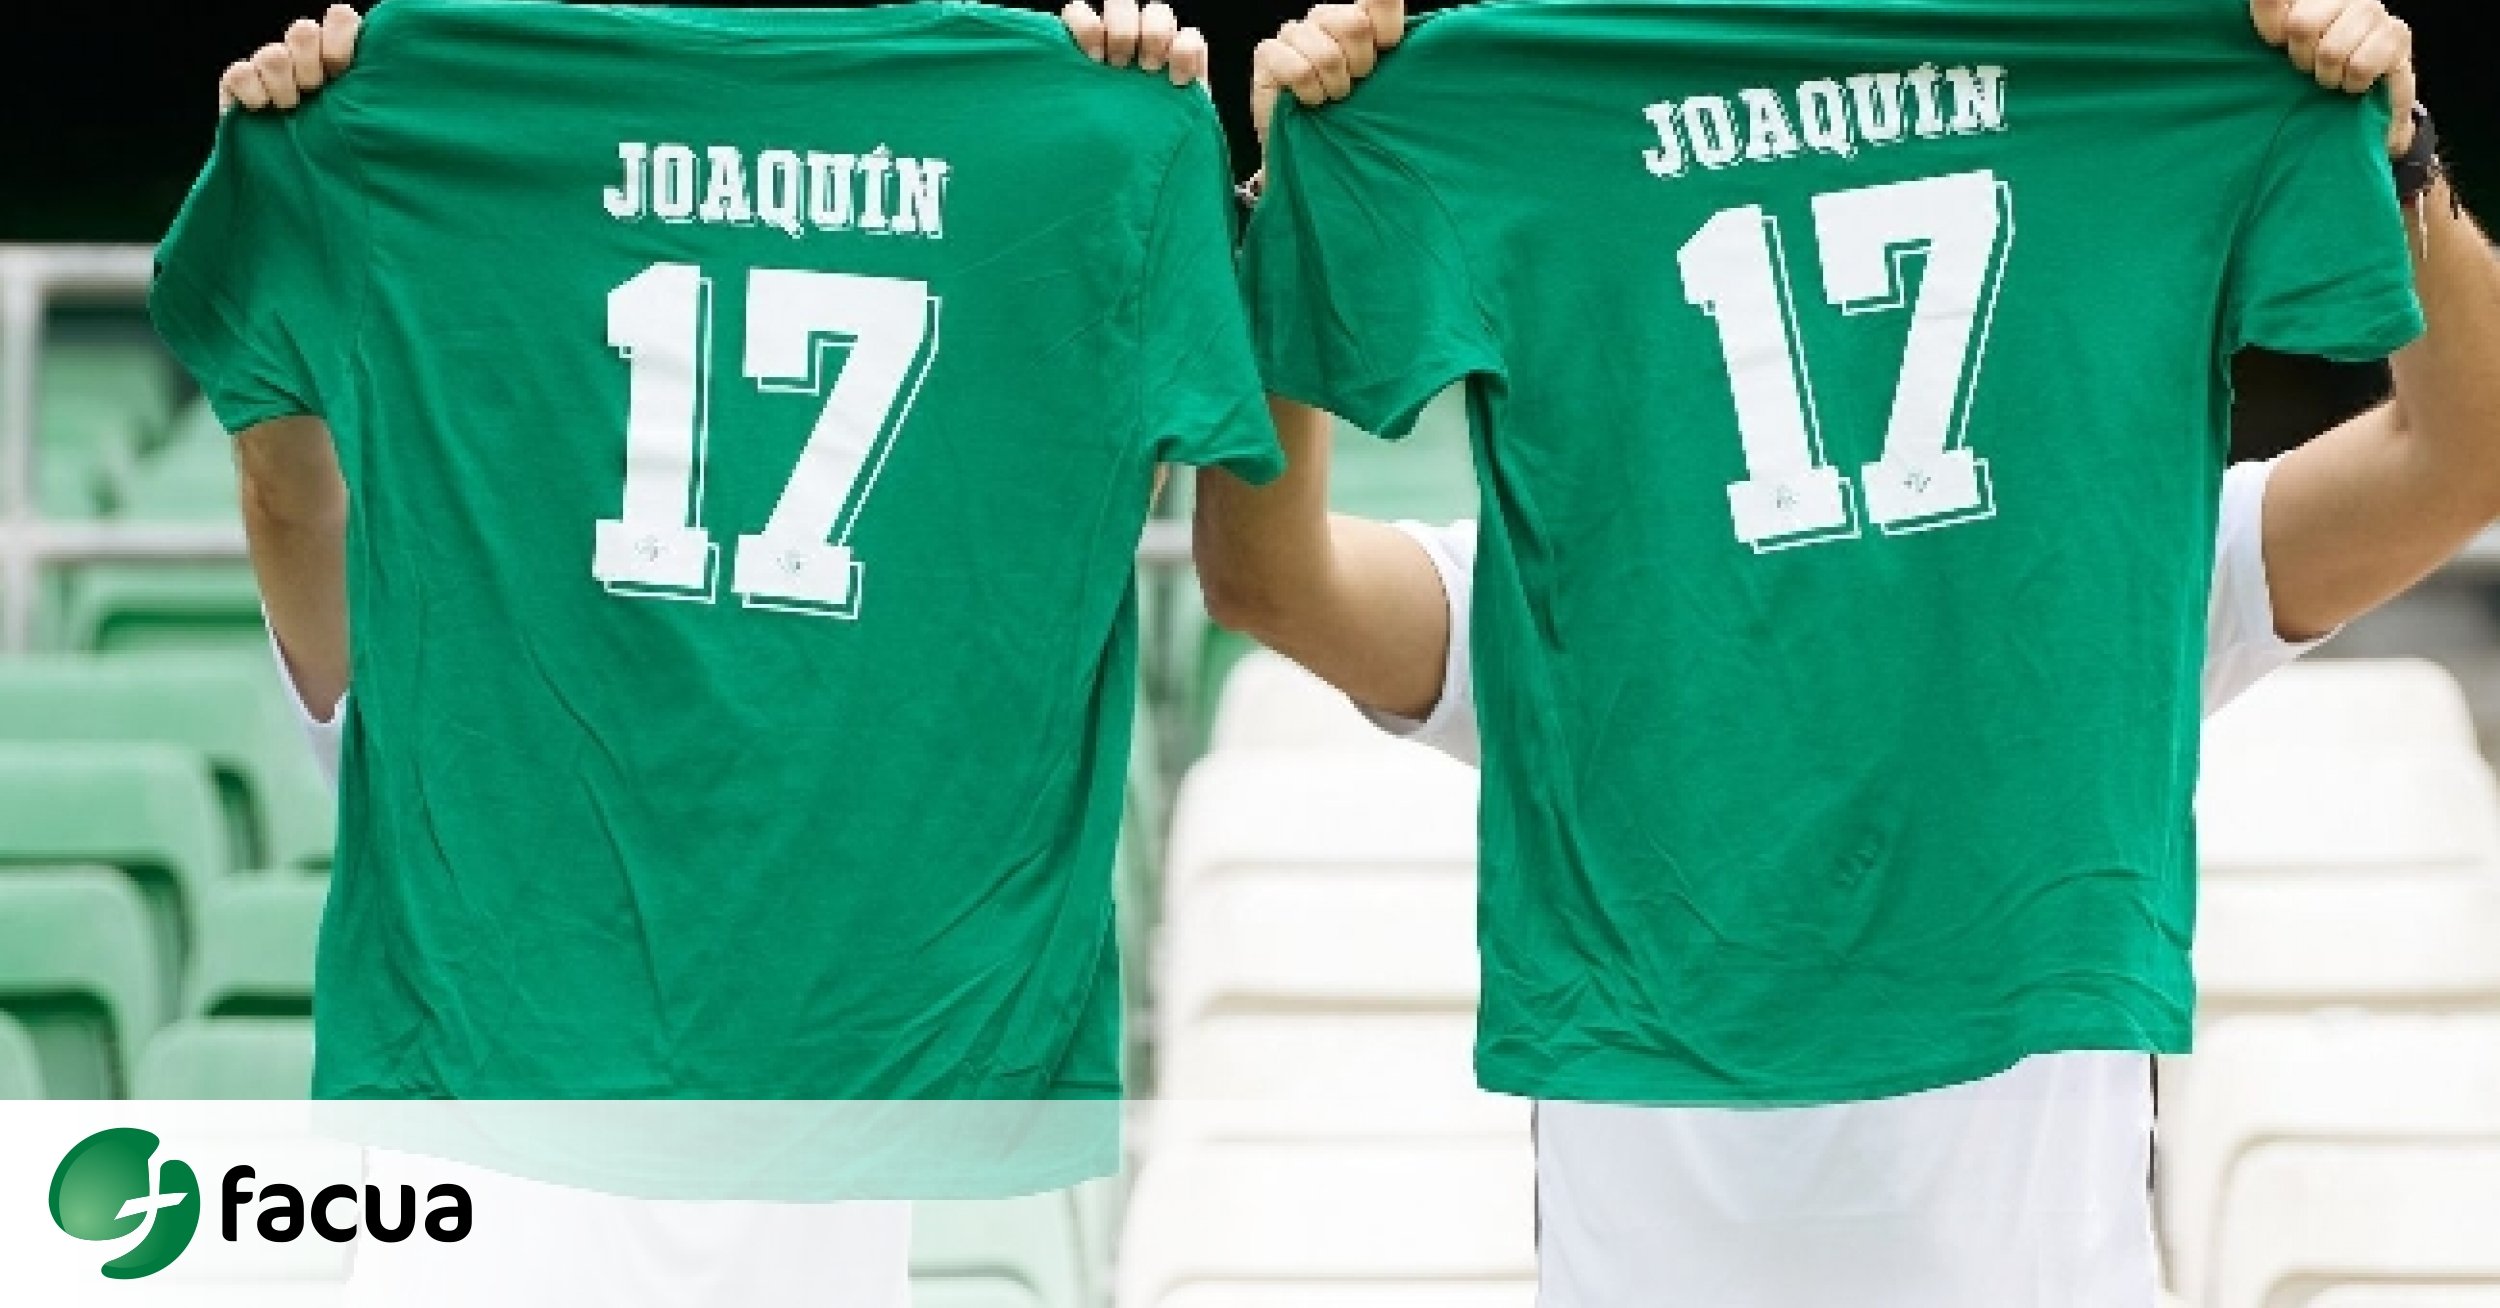 FACUA al Betis a entregar la camiseta homenaje a Joaquín a los asistentes partido